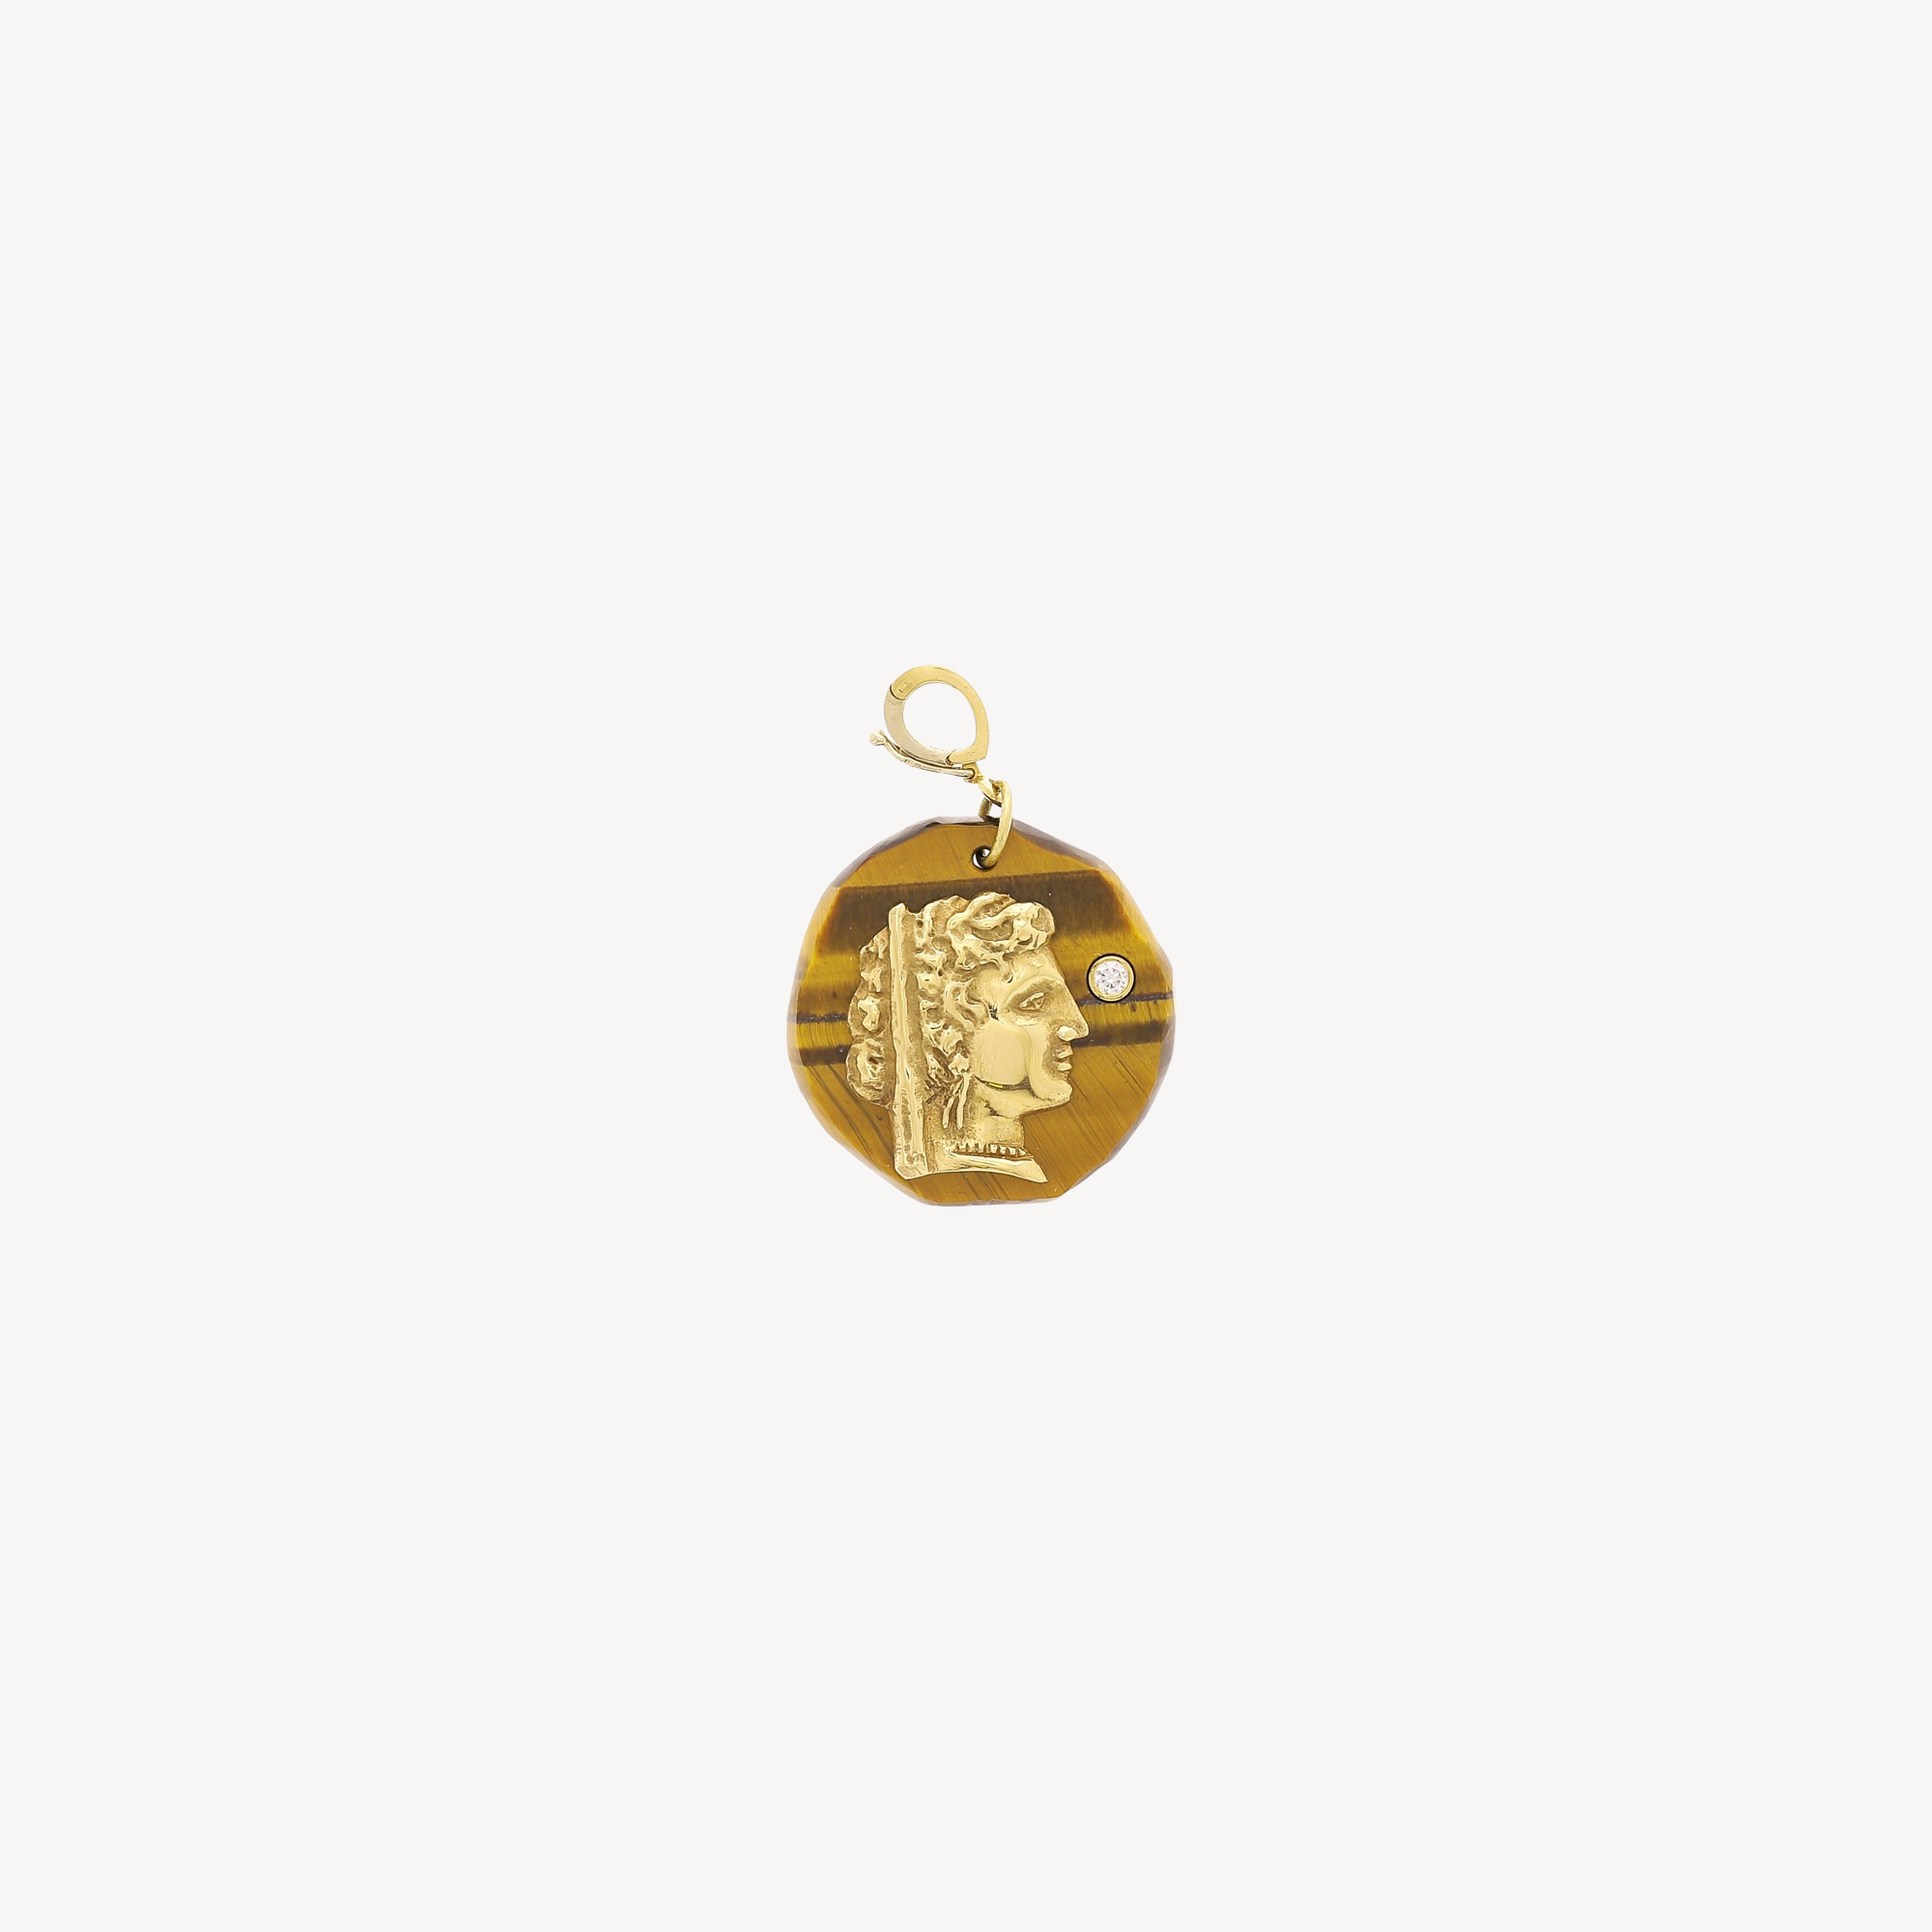 Hera Goddess Small Tigers Eye Amulet Charm